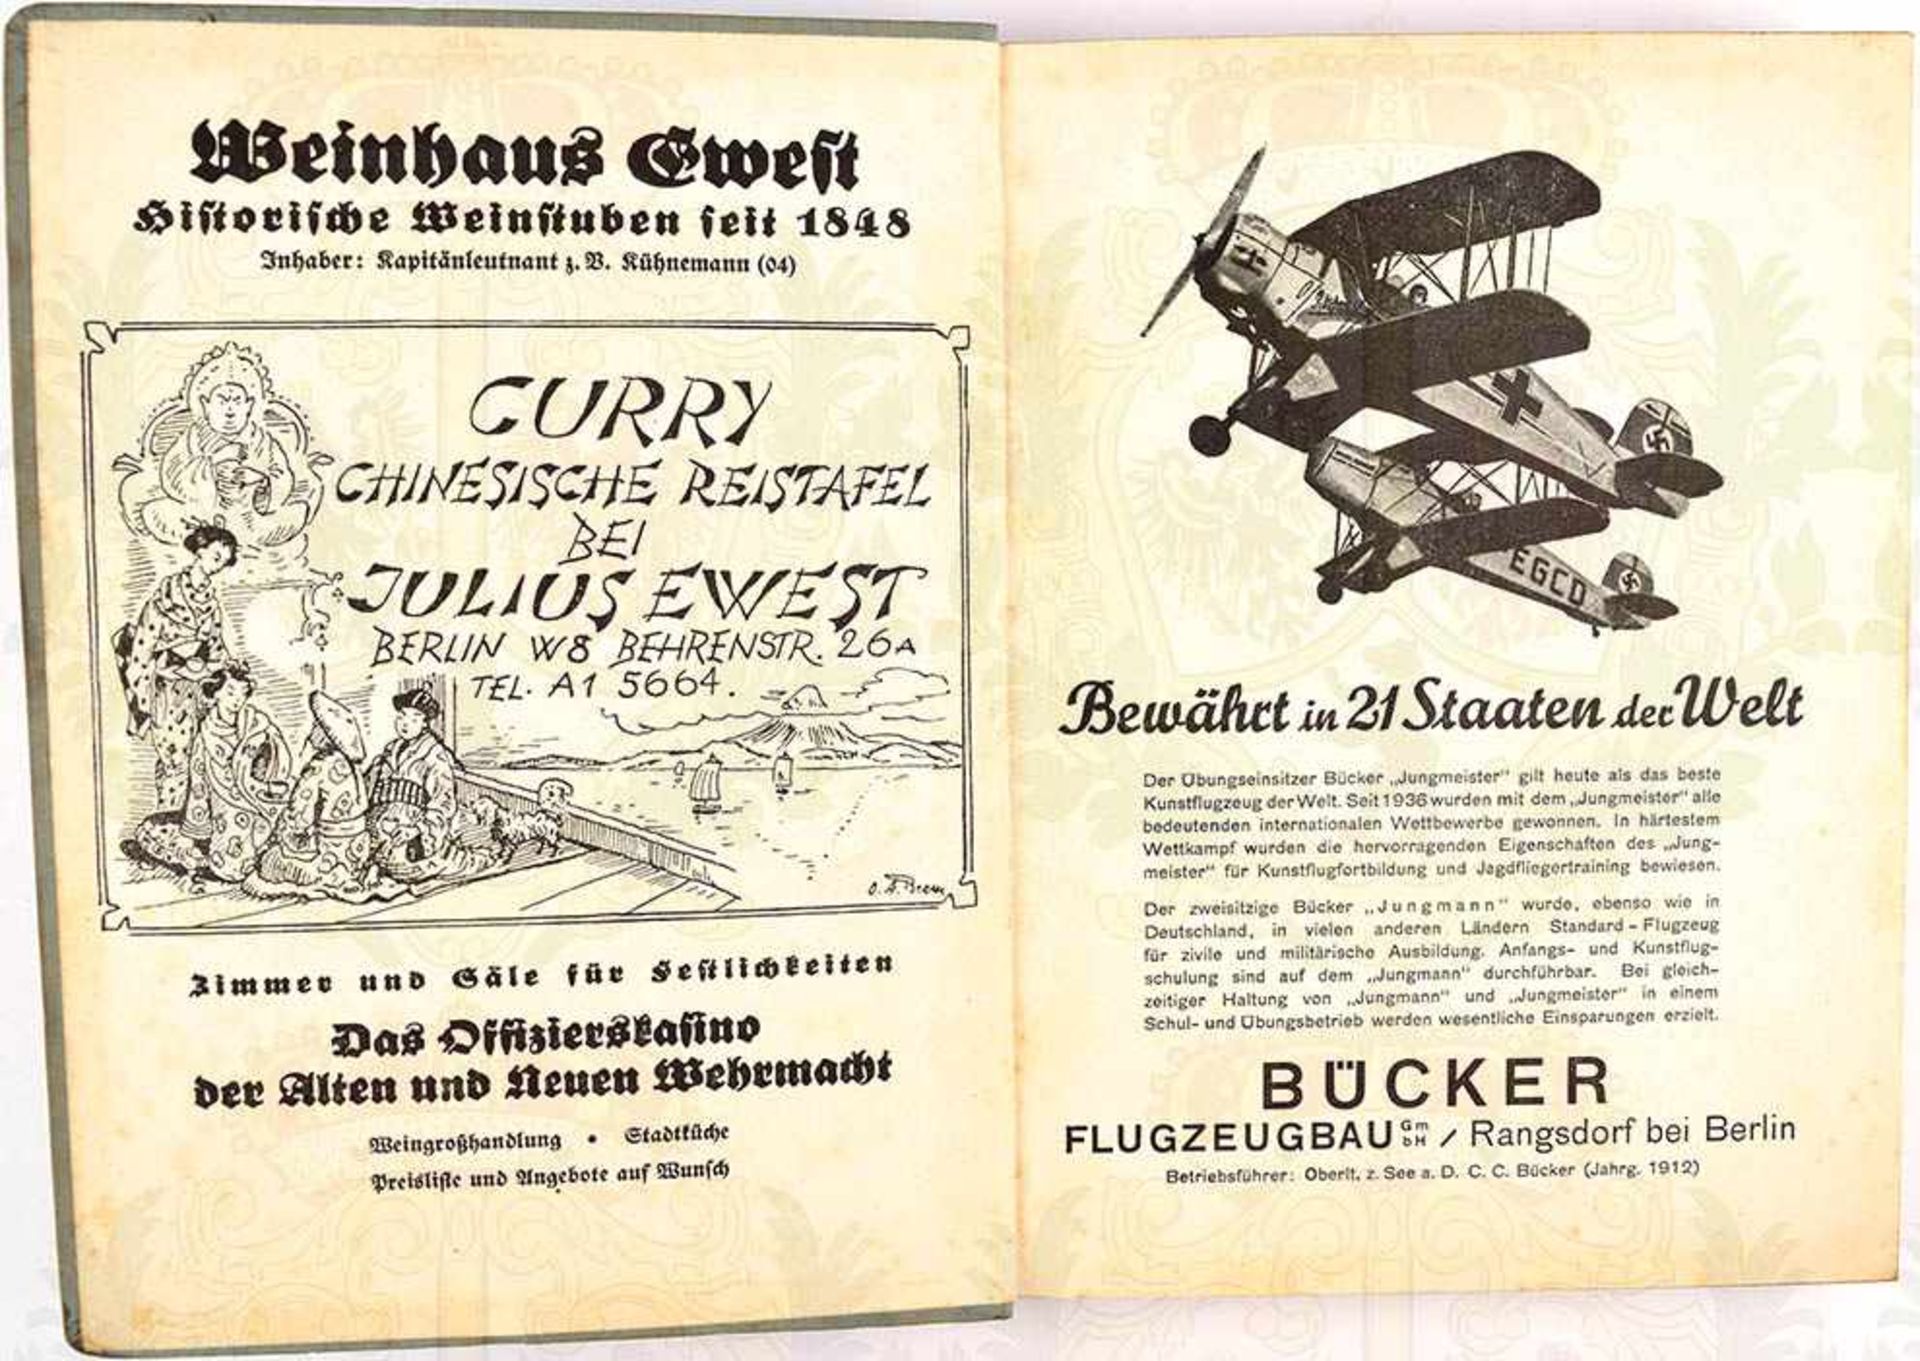 FAHRTENBUCH DES BERLINER RUDERCLUBS „SPREEHORT“, Berlin-Grünau, 7 S. m. Einträgen 1922-1924, 19